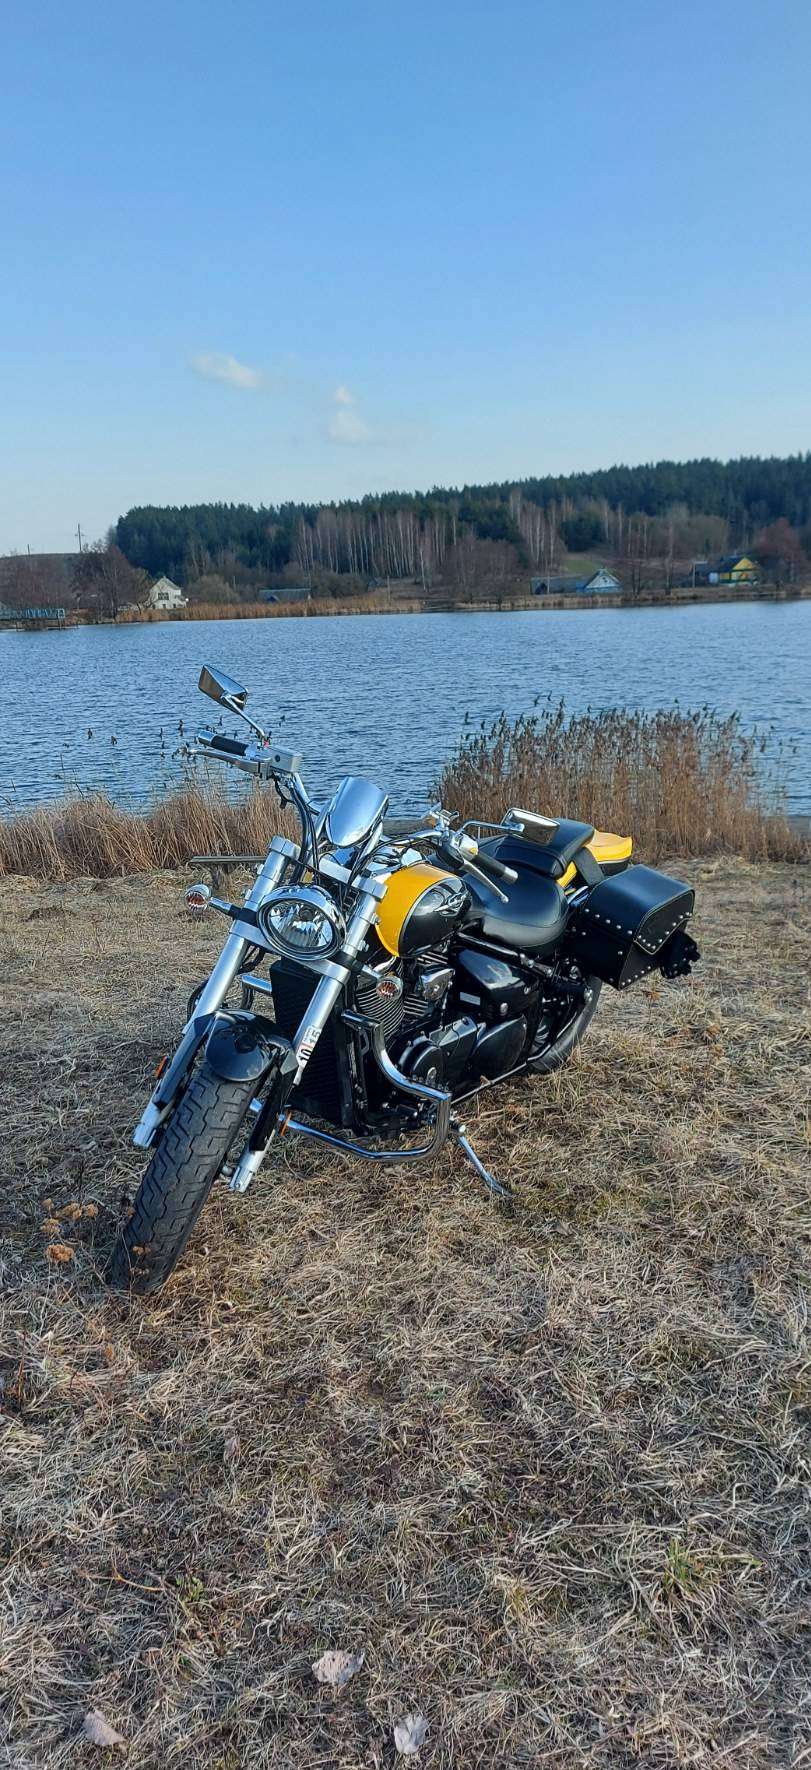 Купить мотоцикл Suzuki в Беларуси в кредит - цены, характеристики, фото. 